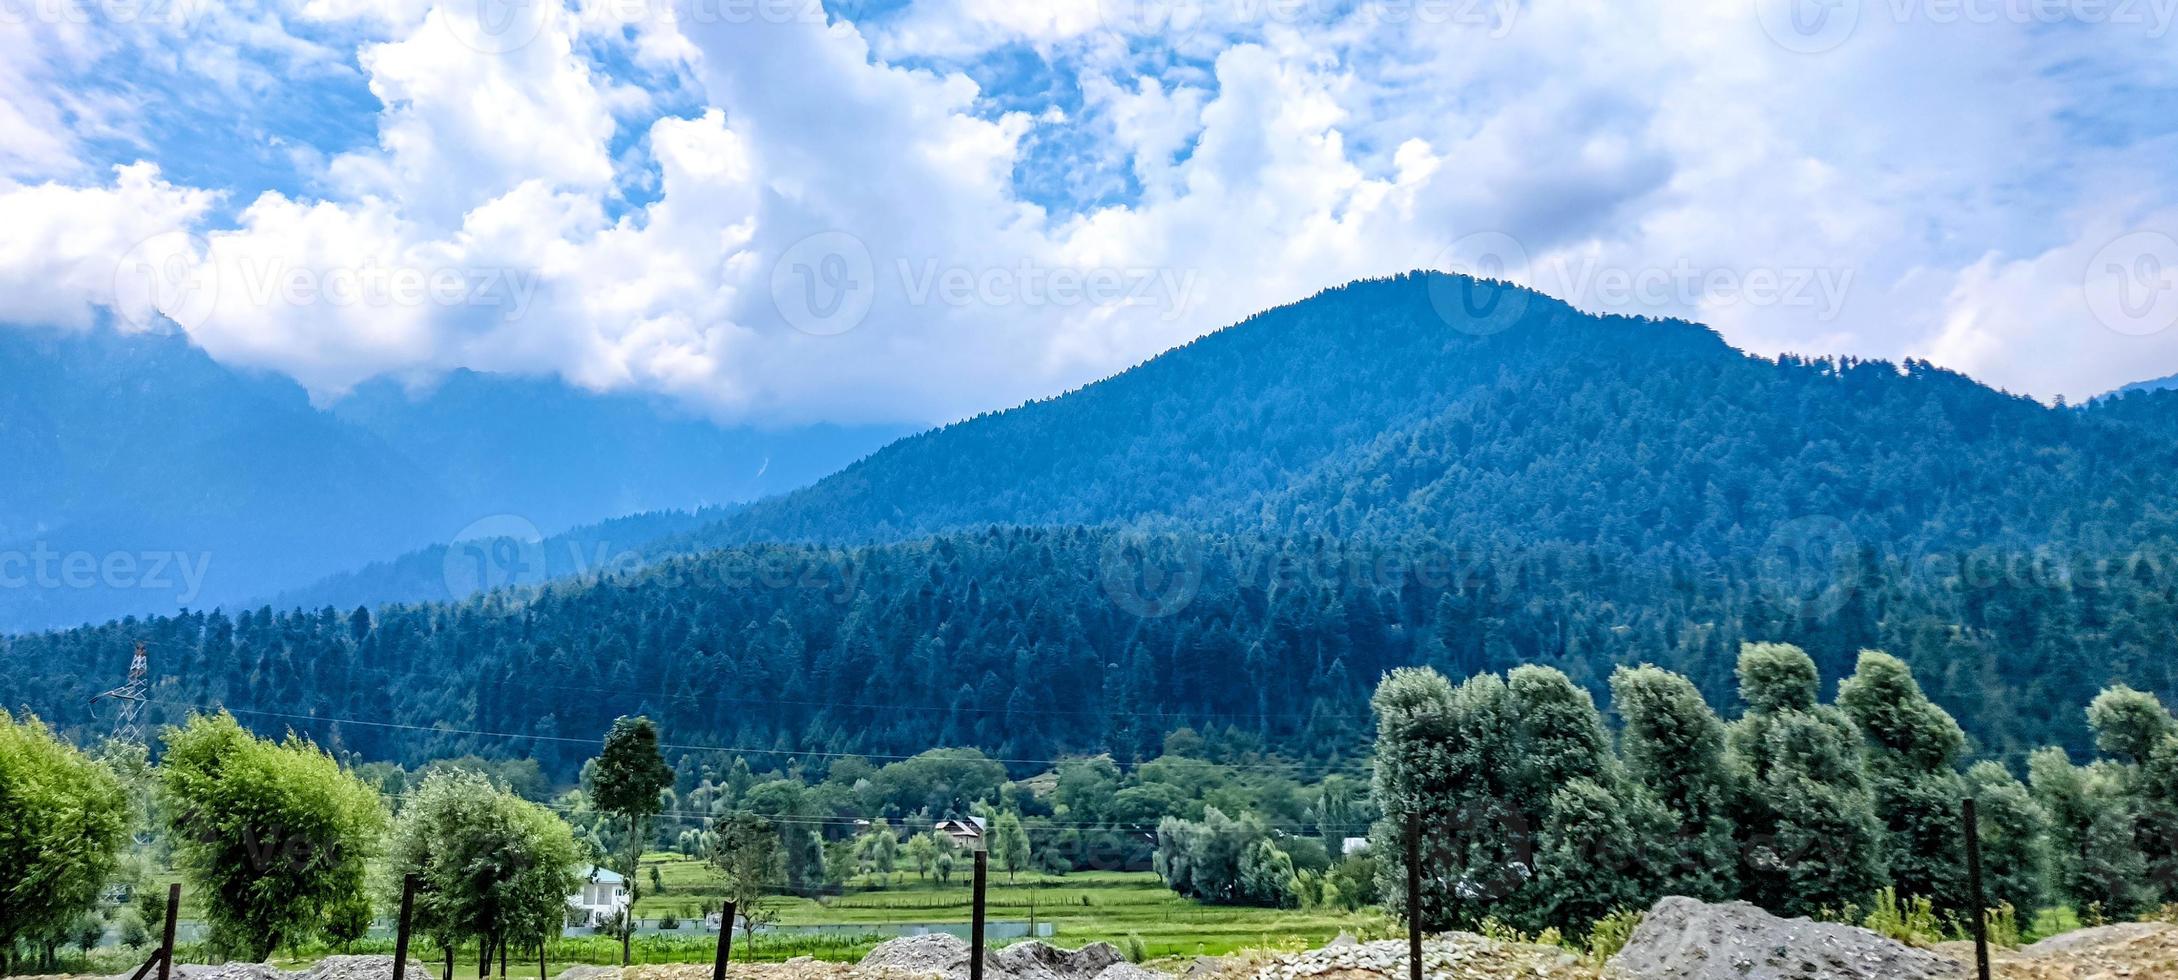 hermosa montaña y vista del cielo nublado de Jammu y Cachemira foto